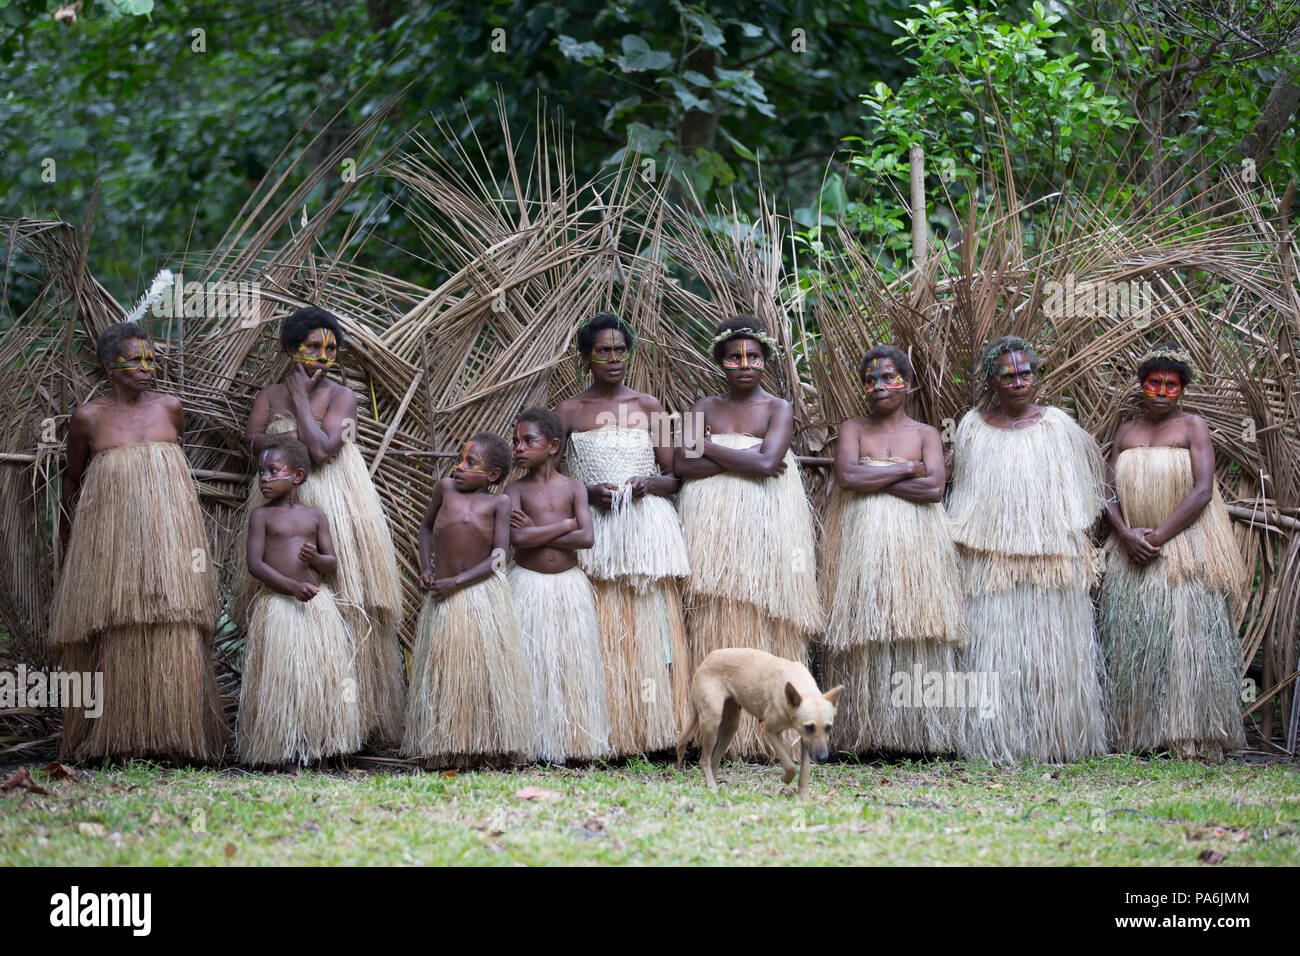 Locals in traditional attire, Tanna, Vanuatu Stock Photo